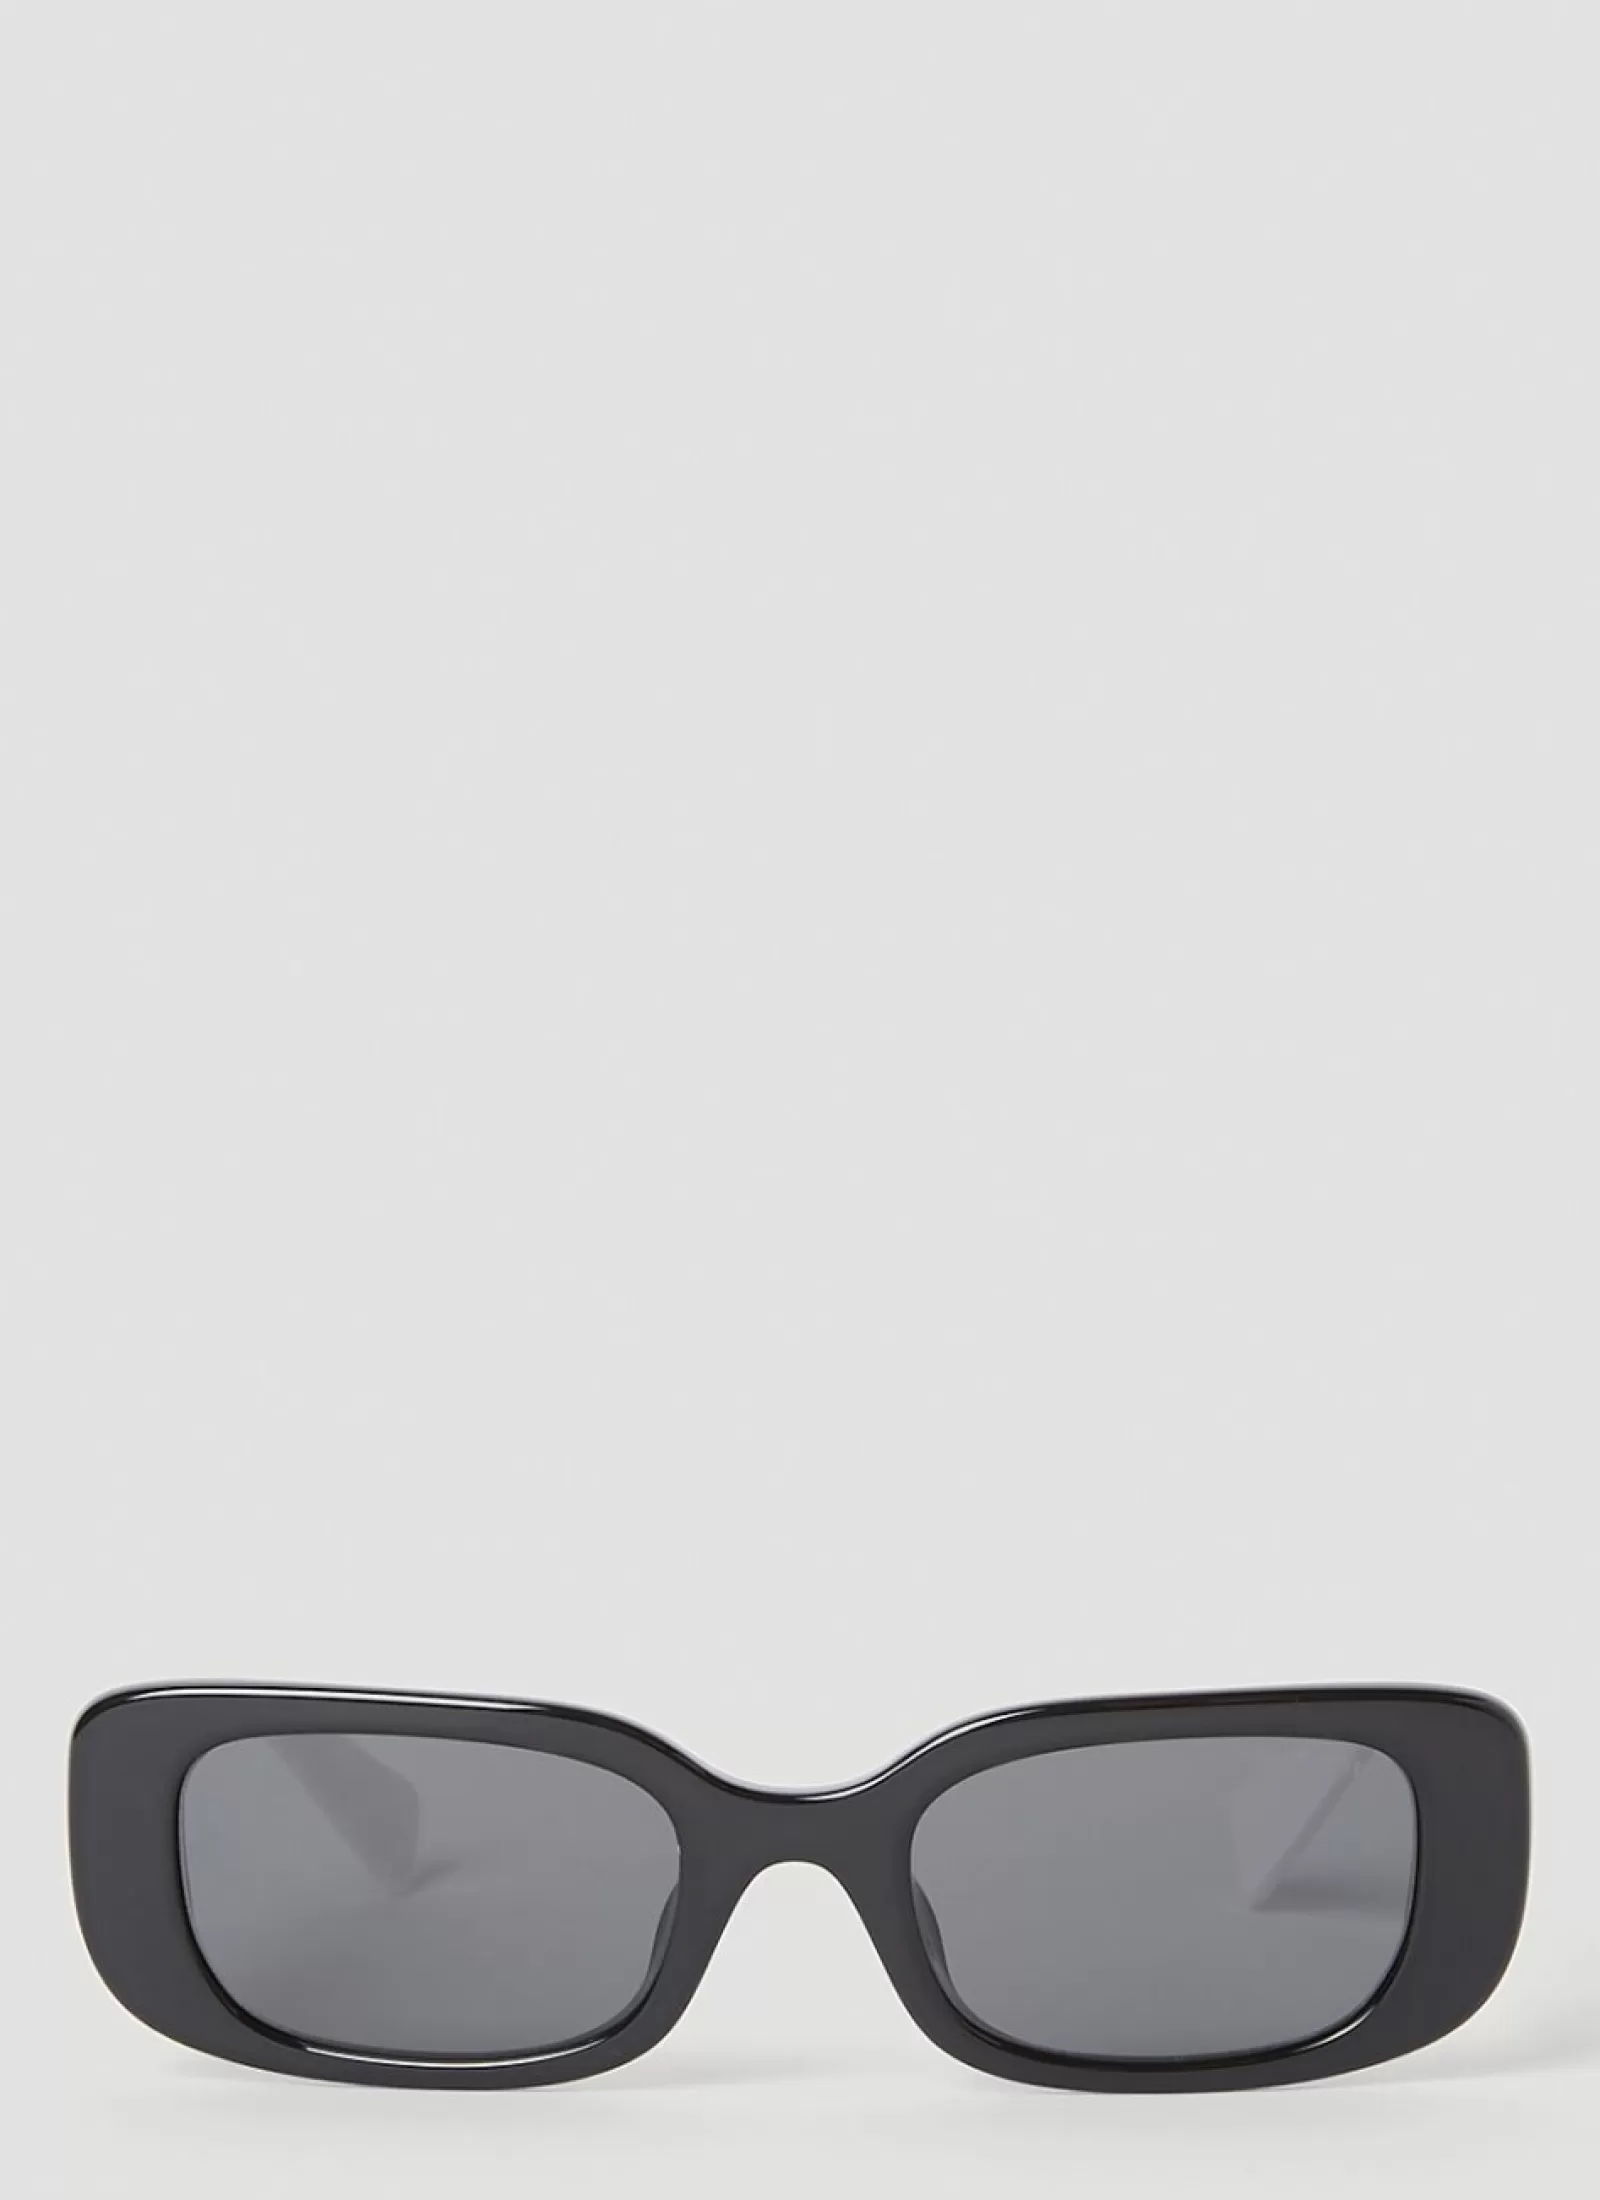 Best Miu Miu Rectangle Frame Sunglasses Black